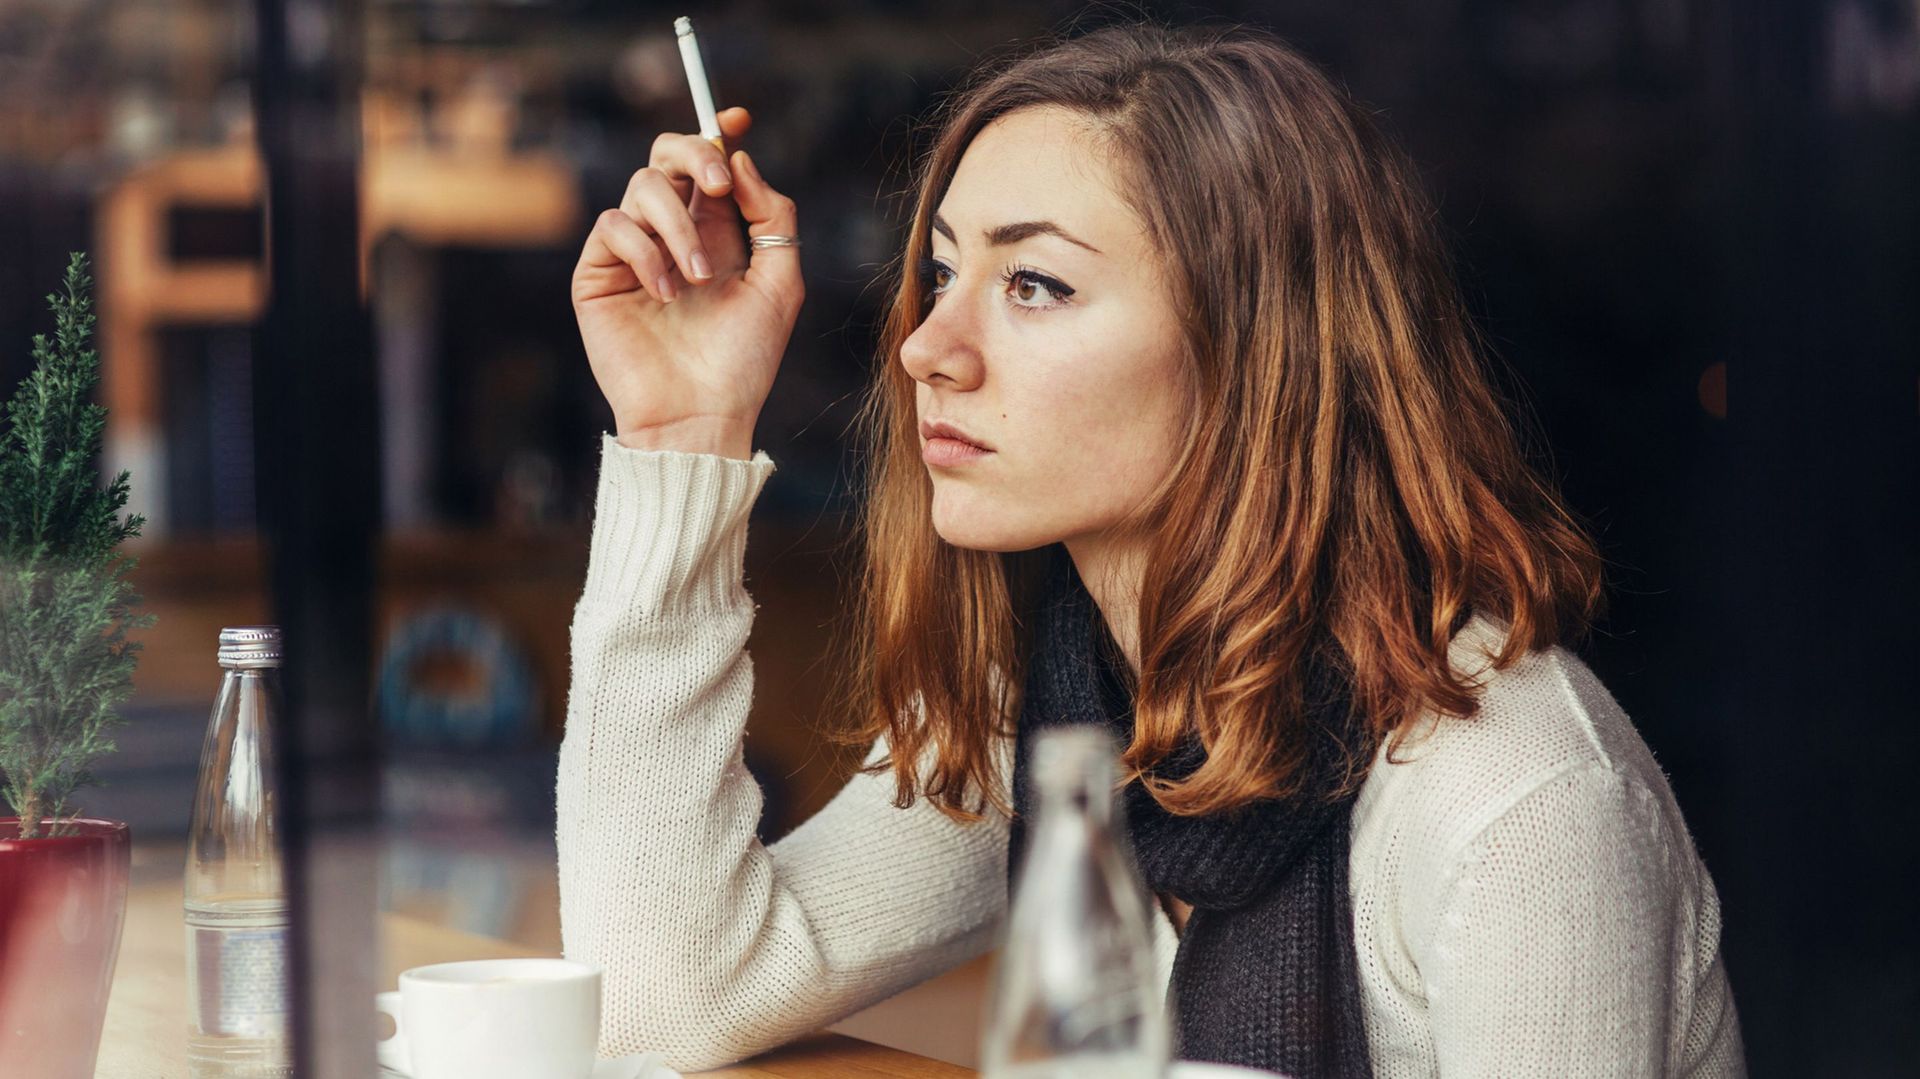 L'odeur de tabac froid qui annonce l'entrée d'un fumeur dans une pièce pourrait présenter des risques, en plus d'être désagréable, selon une nouvelle étude américaine publiée mercredi.